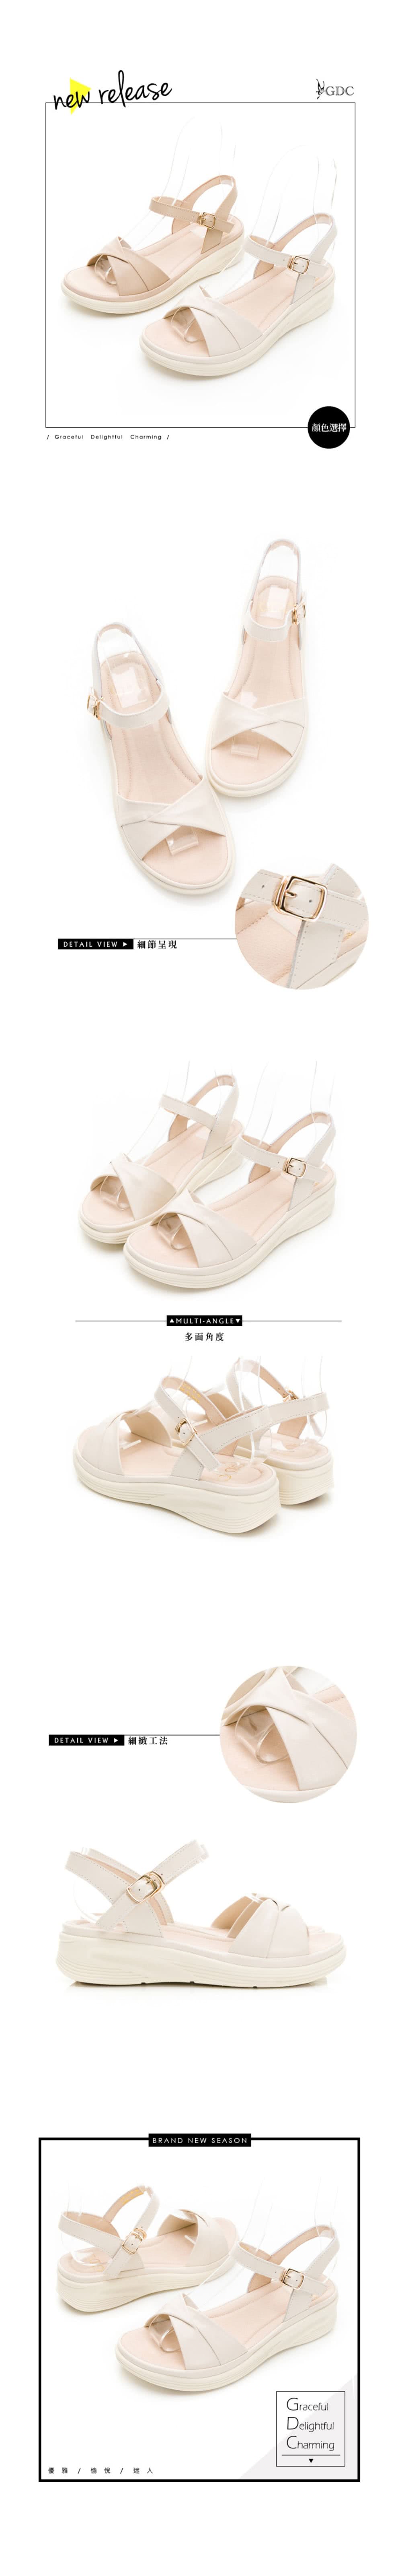 GDC 春夏粉嫩系素色簡約輕底涼鞋-米色(312444-10